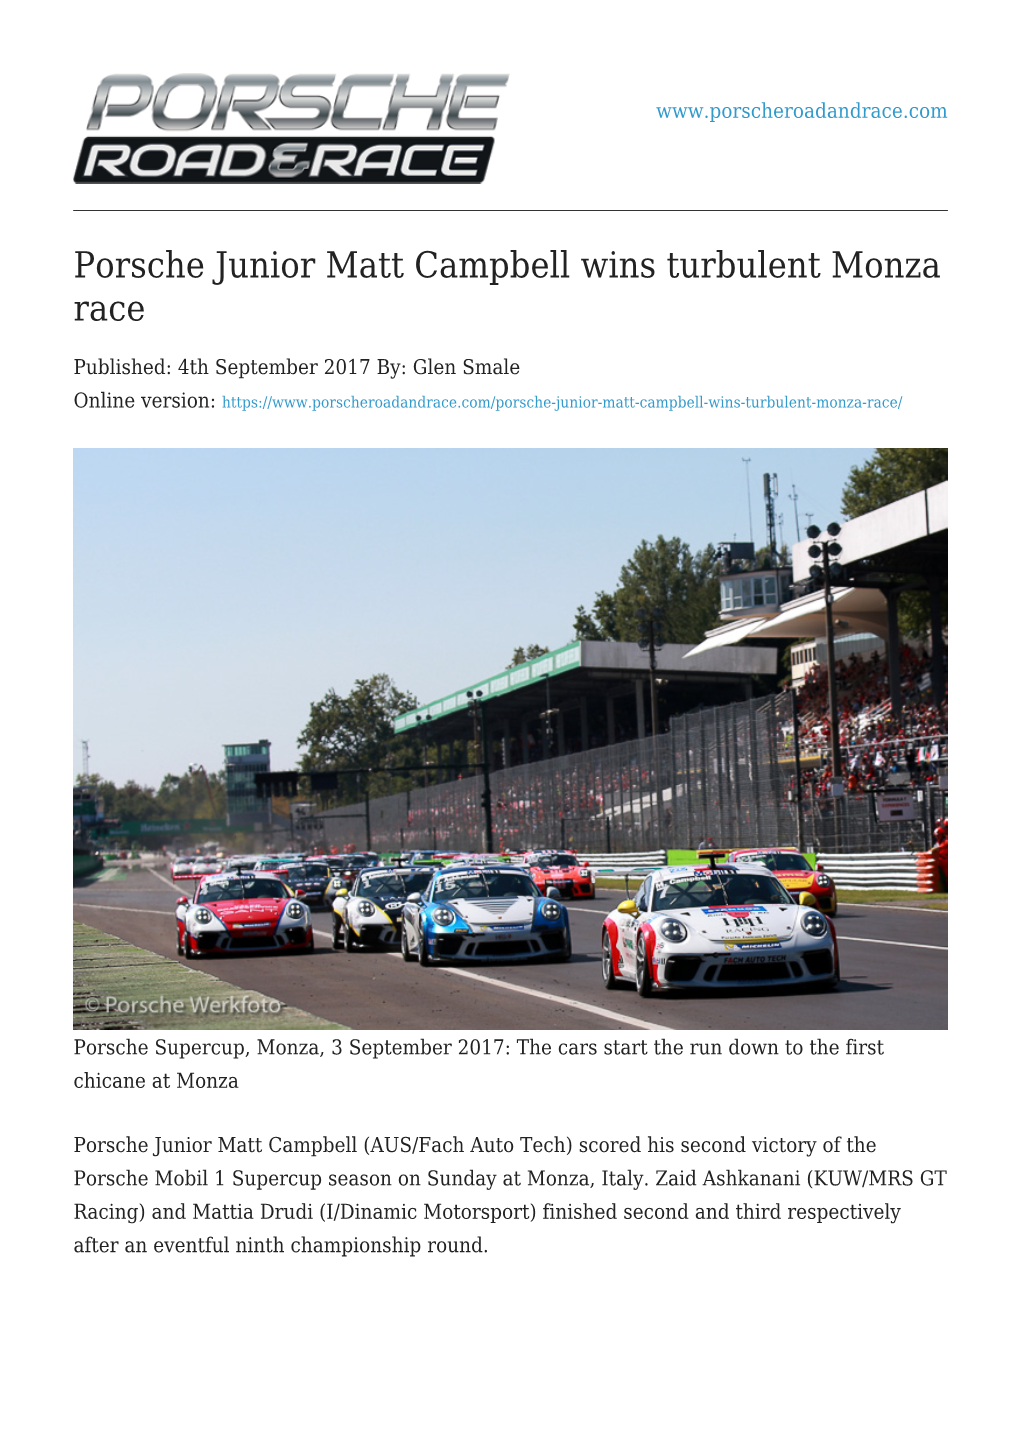 Porsche Junior Matt Campbell Wins Turbulent Monza Race